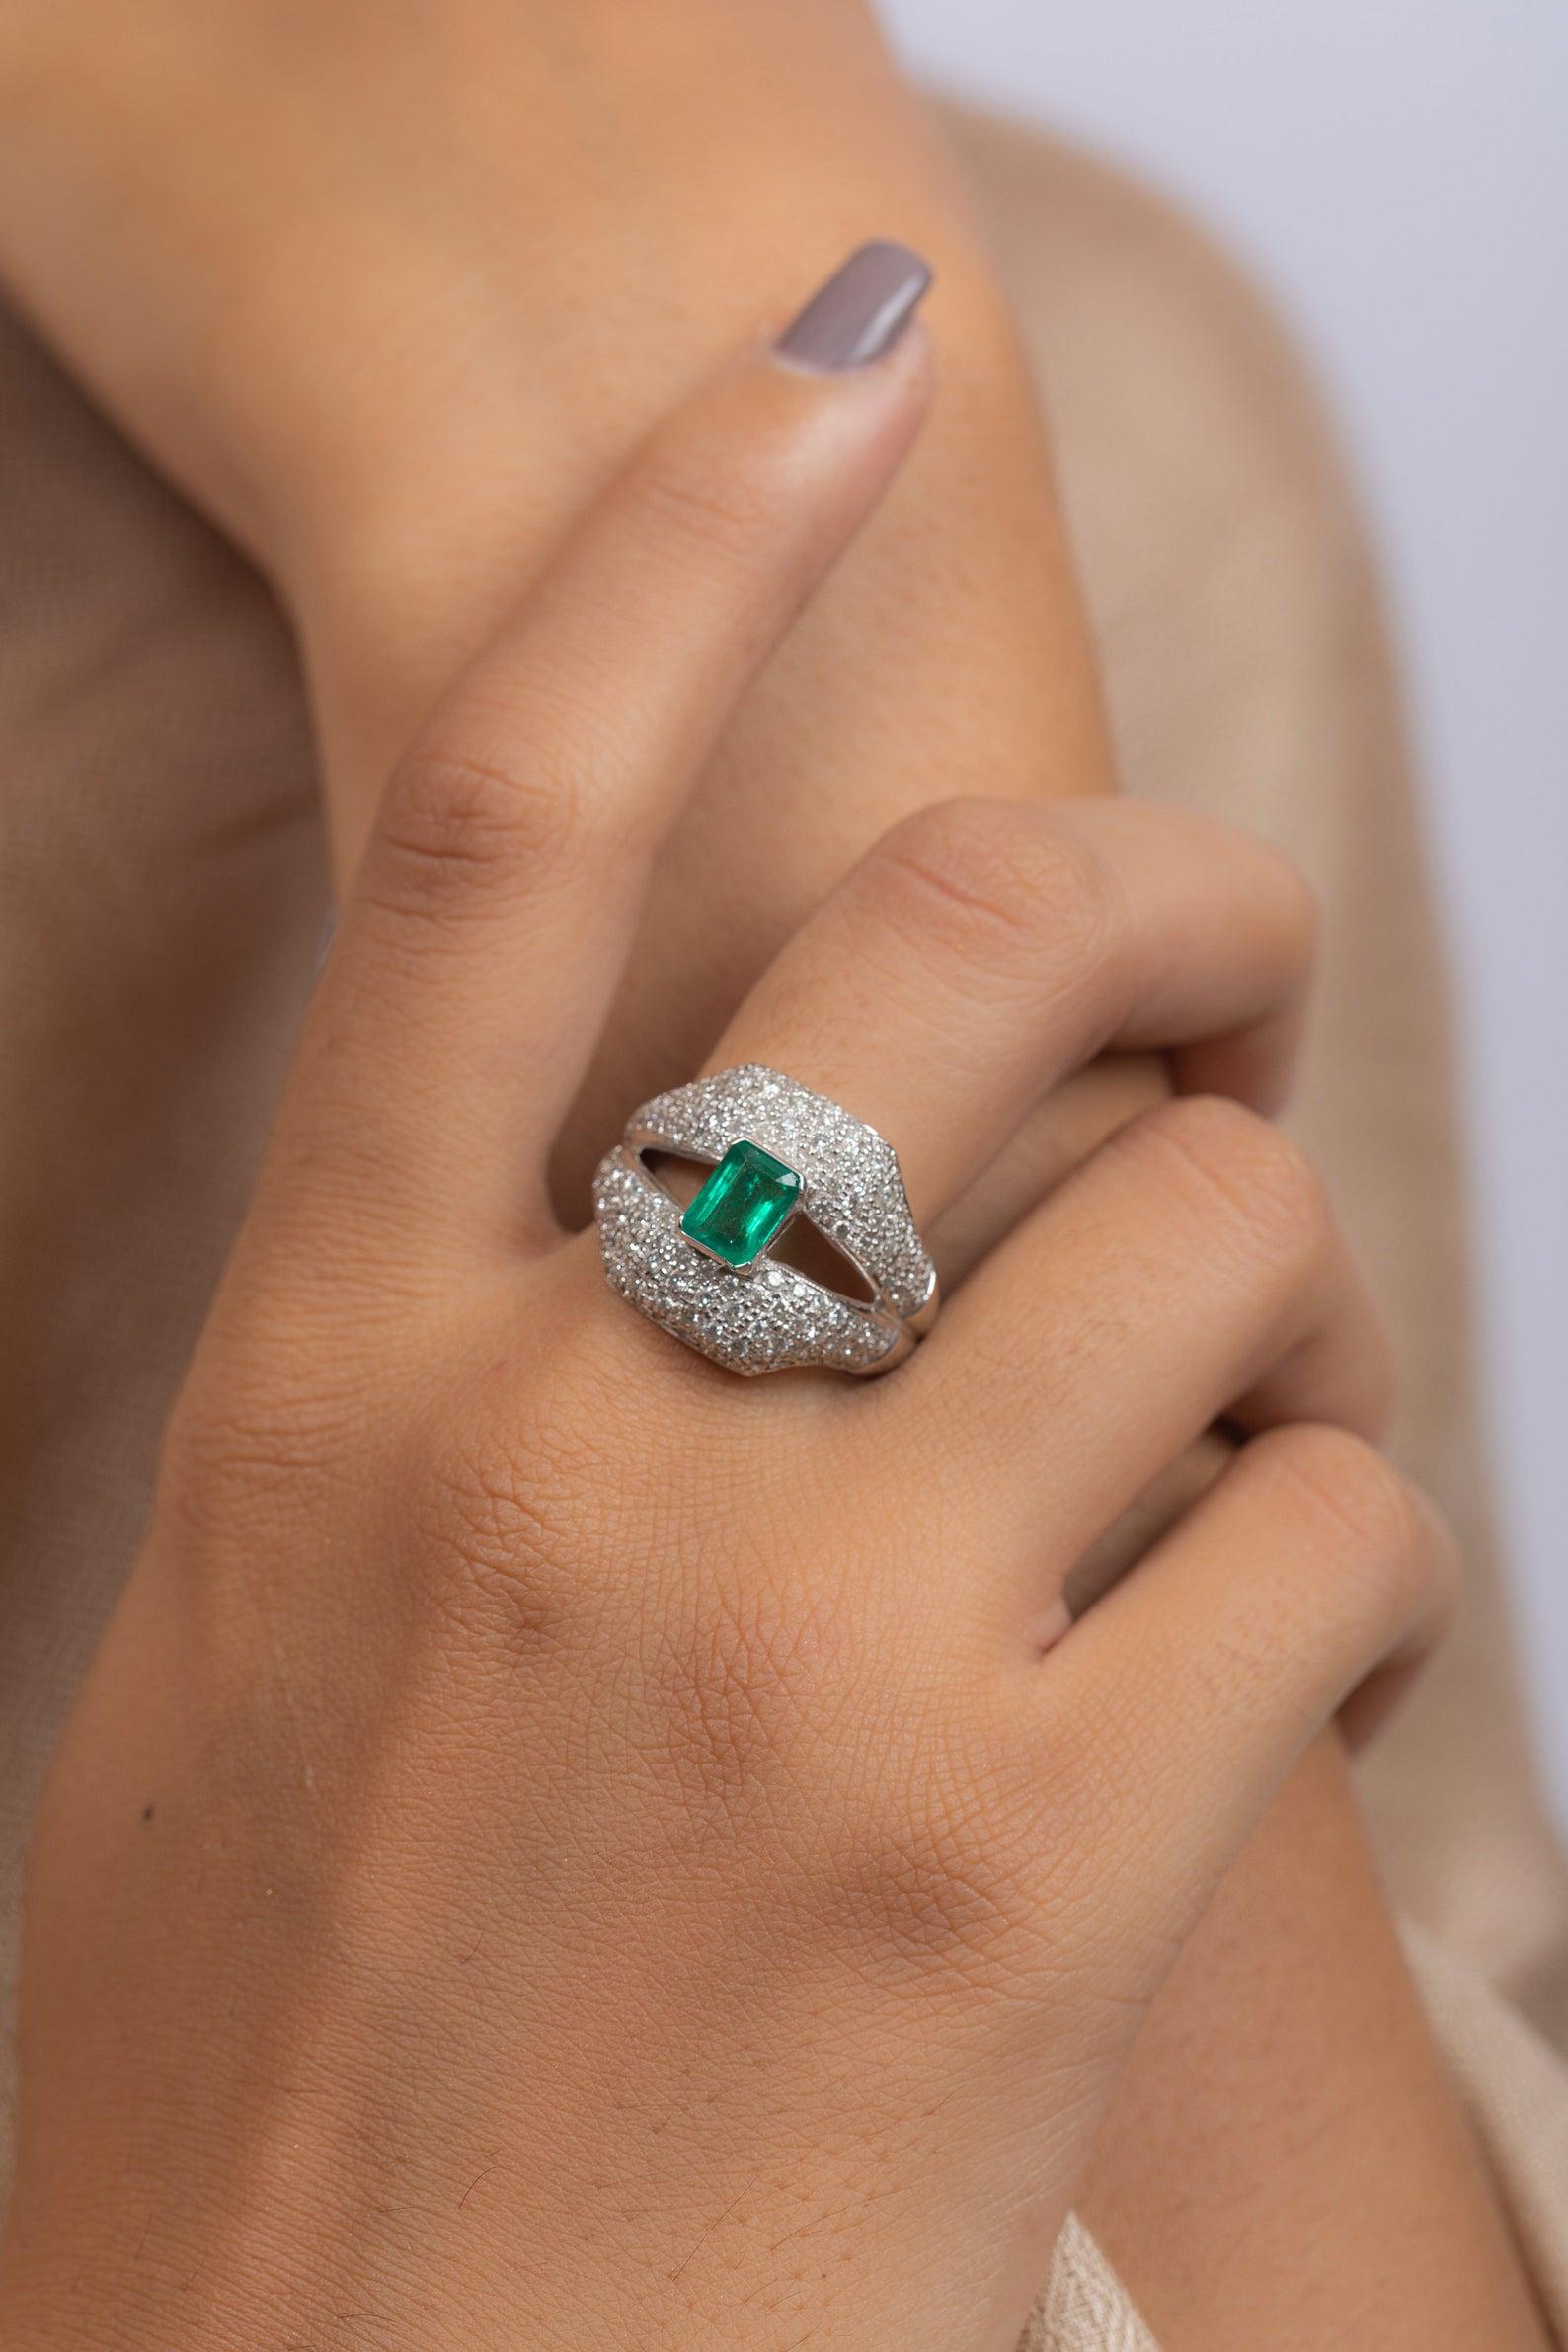 Dieser Ring wurde mit großer Sorgfalt aus 14-karätigem Gold gefertigt.  Er ist von Hand mit 1,0 Karat Smaragd und 1,55 Karat funkelnden Diamanten besetzt. 

Der Ring hat die Größe 7 und kann auf Anfrage größer oder kleiner gemacht werden. 
FOLLOW 